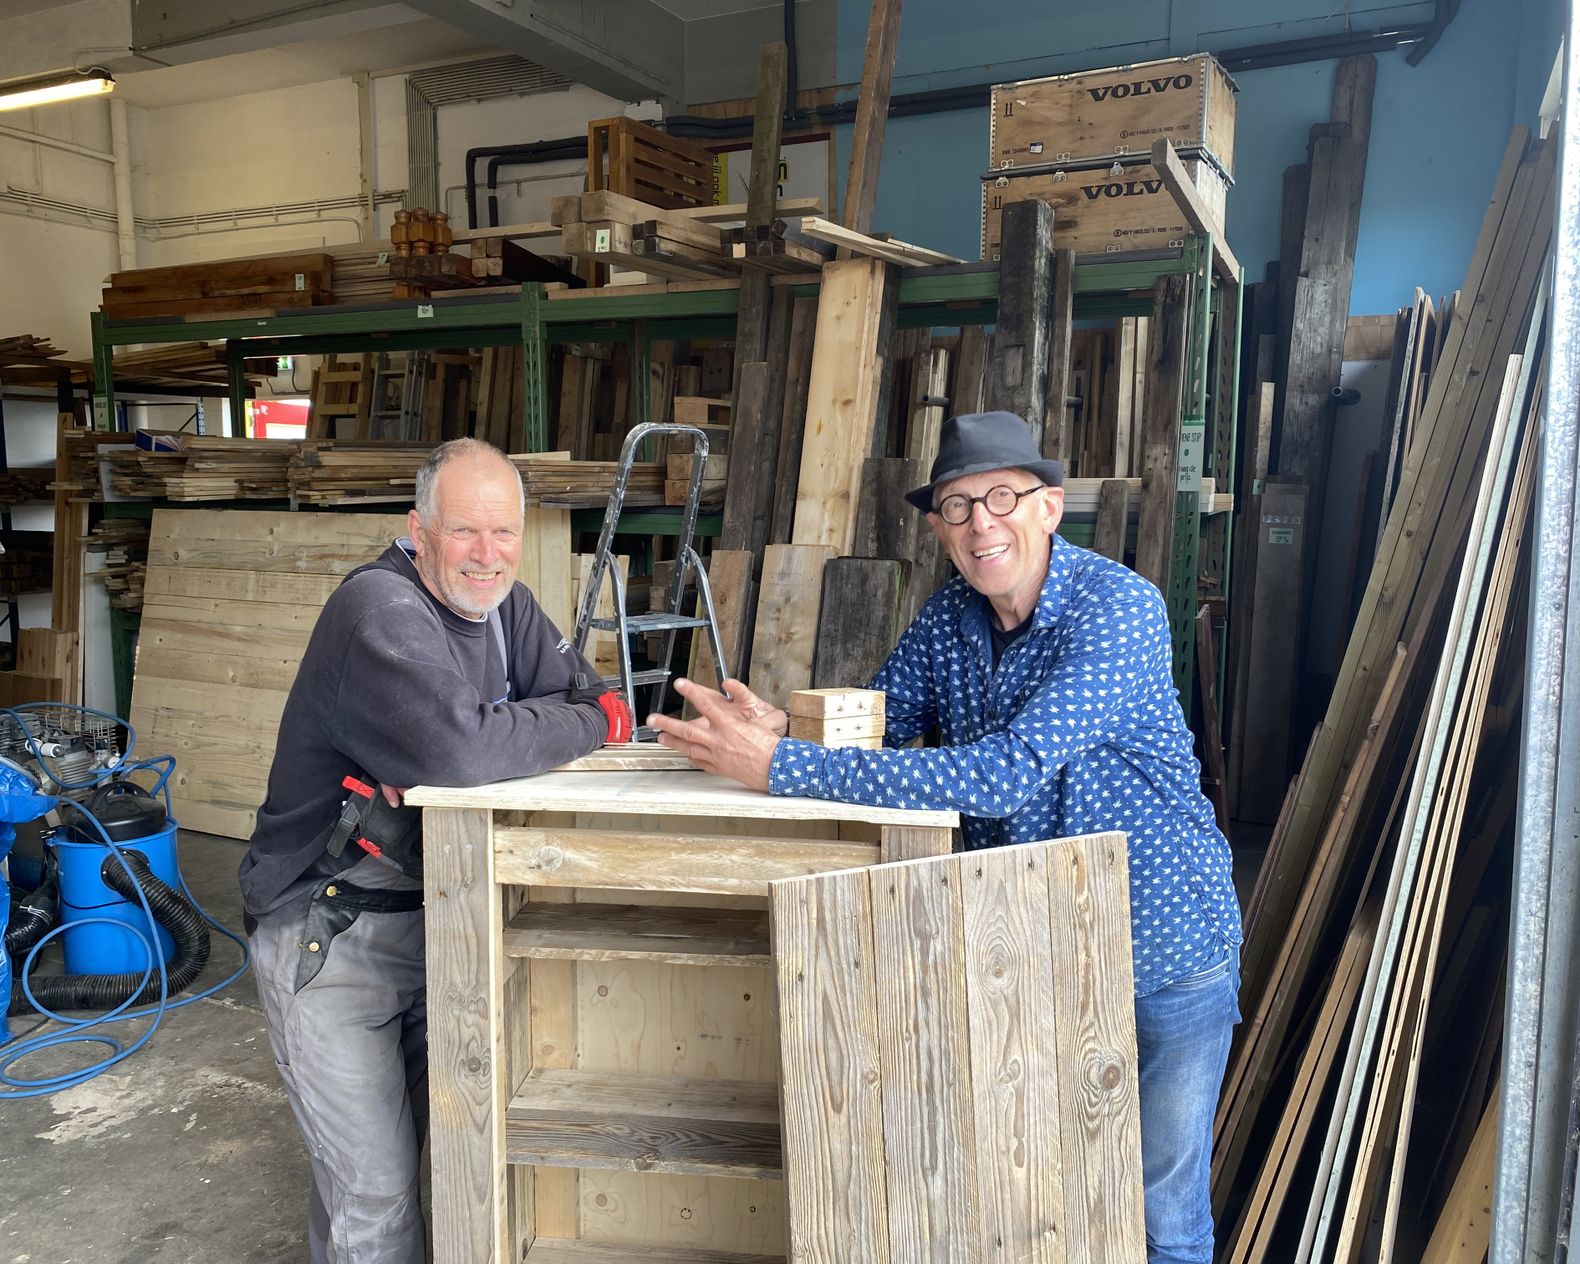 Twee mannen die staan bij een hout meubelstuk omringt door allemaal verschillende houtplanken.